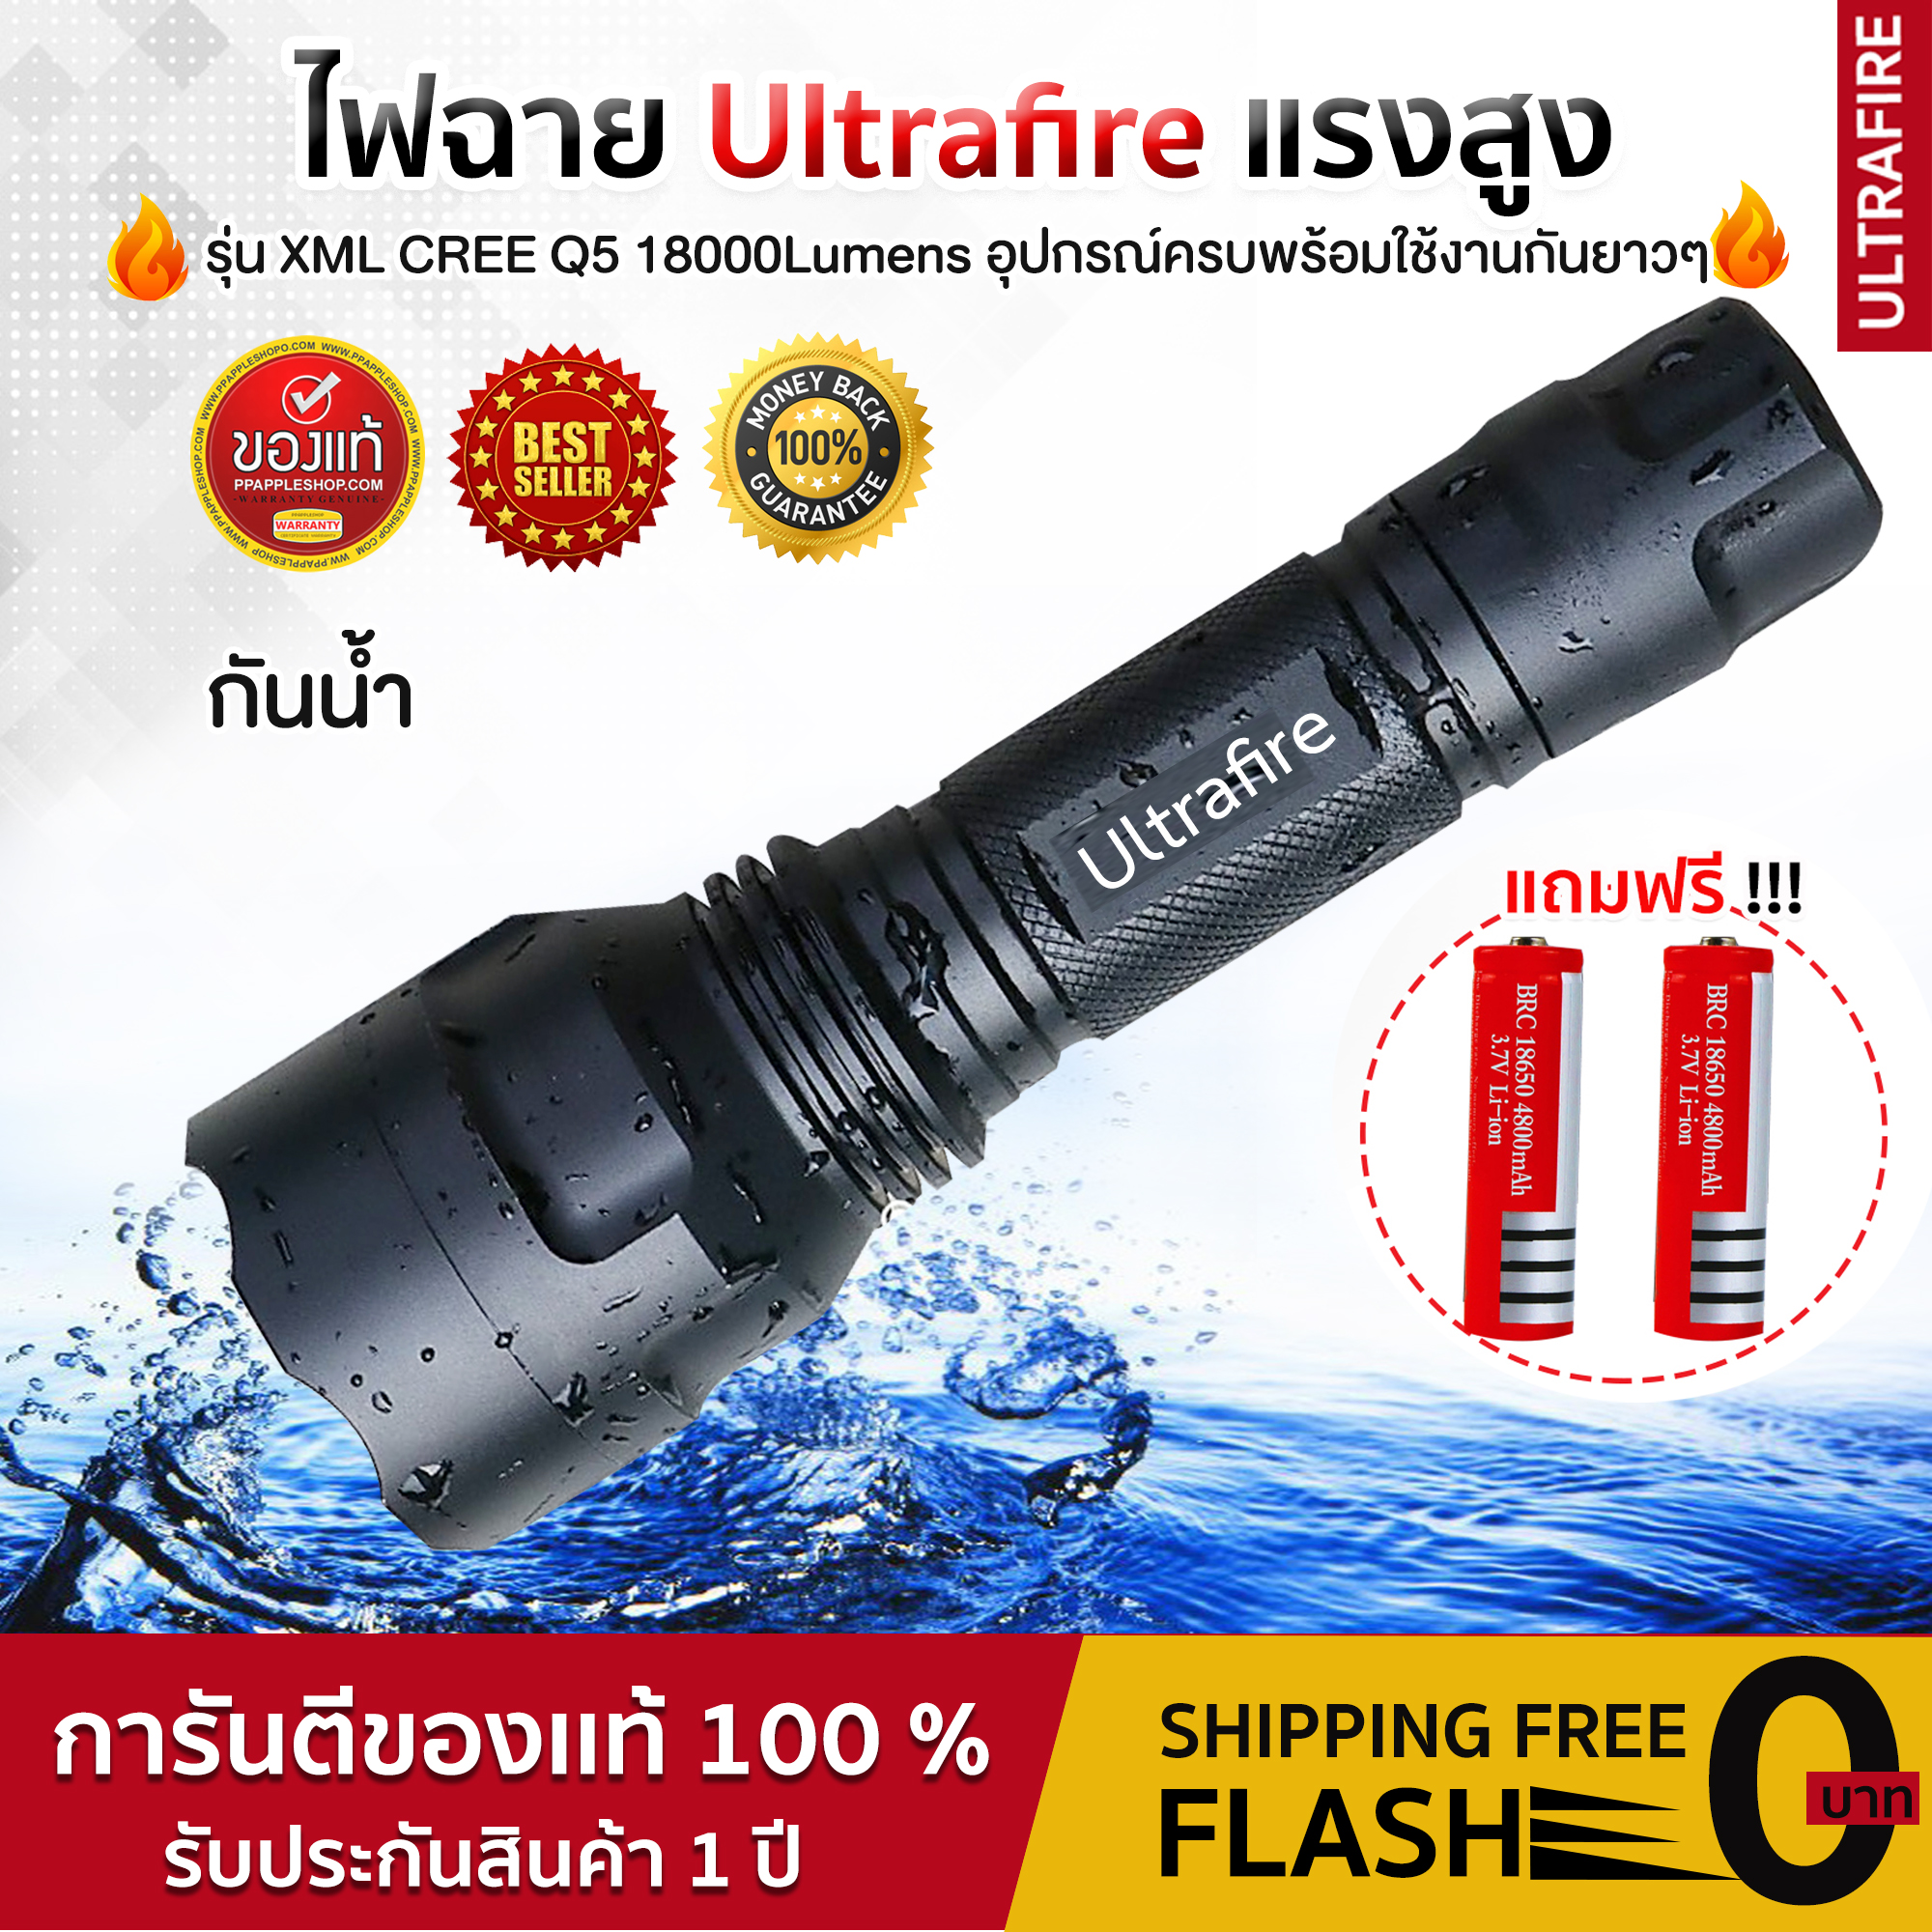 ไฟฉาย UltraFire Flashlight (LED CREE XML Q5 28000W ) 18000Lumens อุปกรณ์ครบพร้อมใช้งาน พิเศษแถมถ่านเพิ่ม1ก้อน ส่งฟรี UltraFire ของแท้ ยอดขายอันดับ1ของไทย